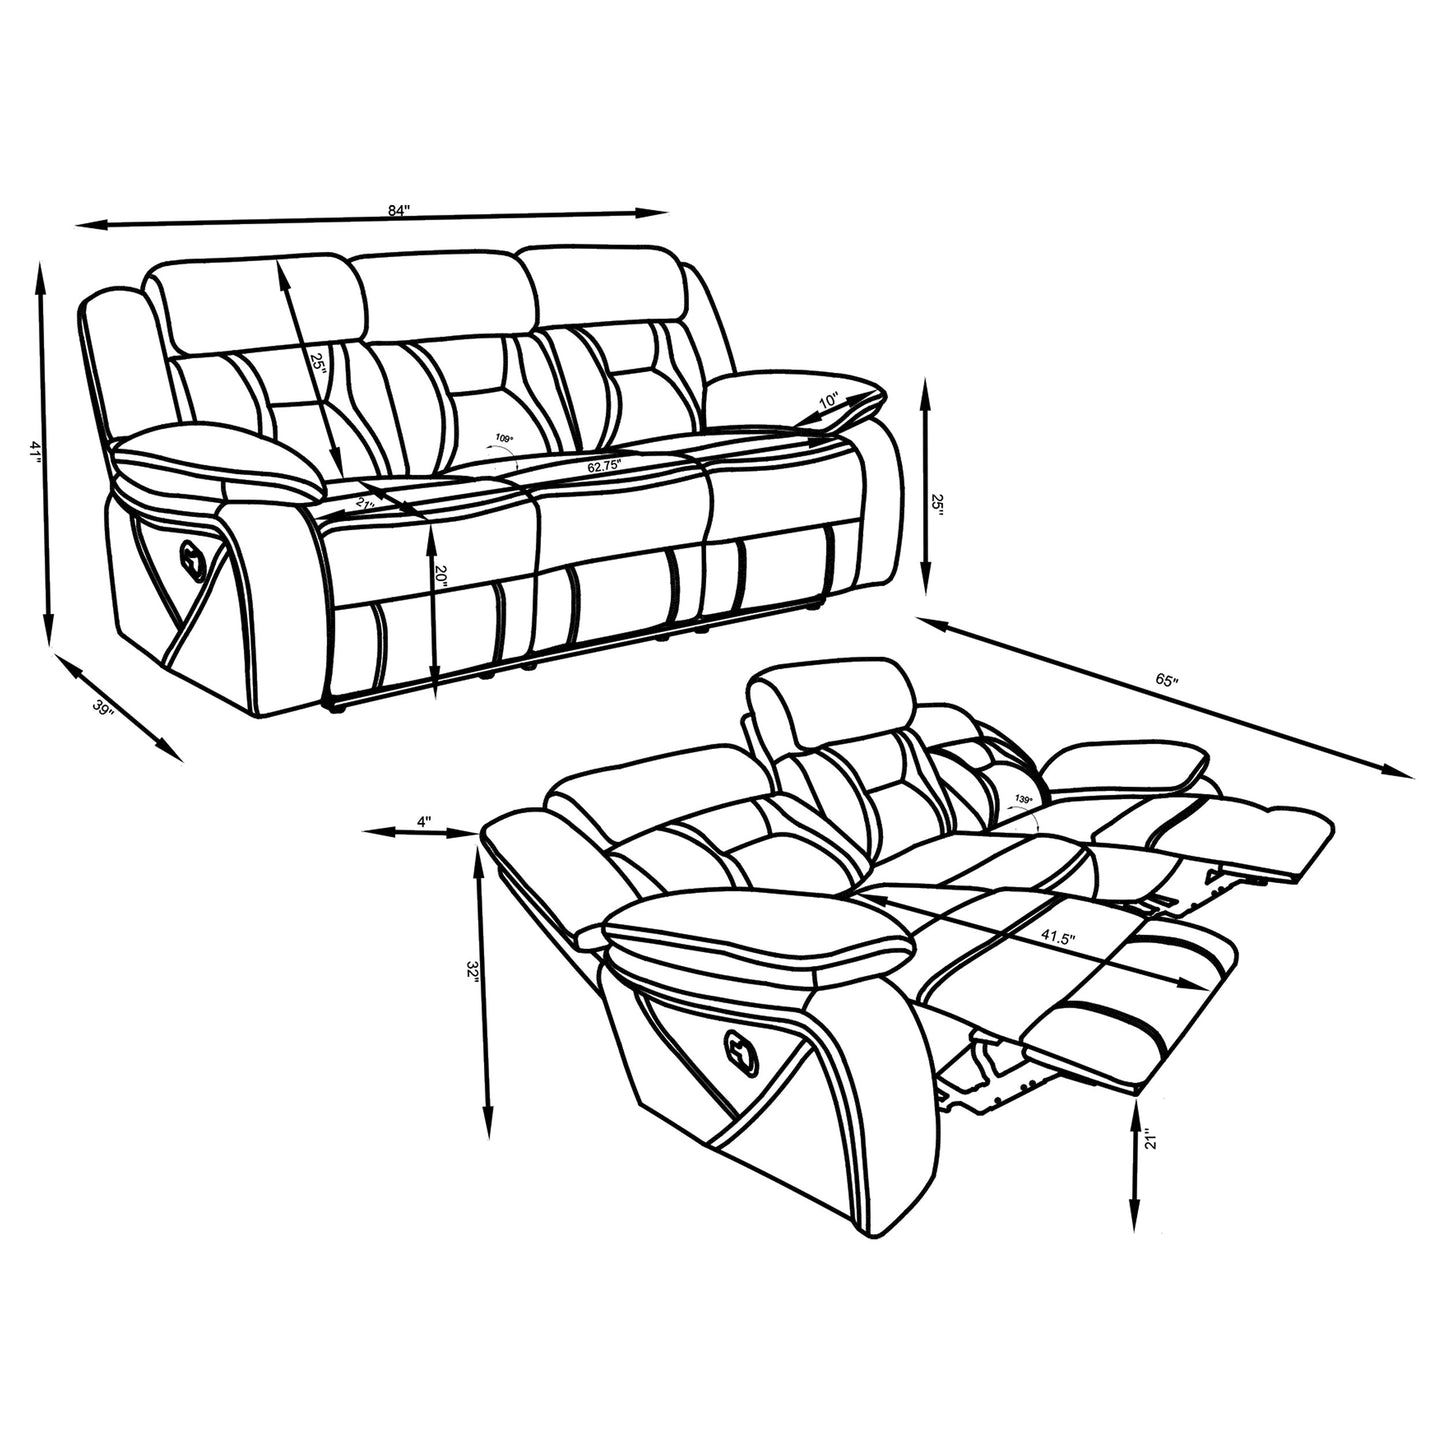 Higgins Upholstered Tufted Living Room Set